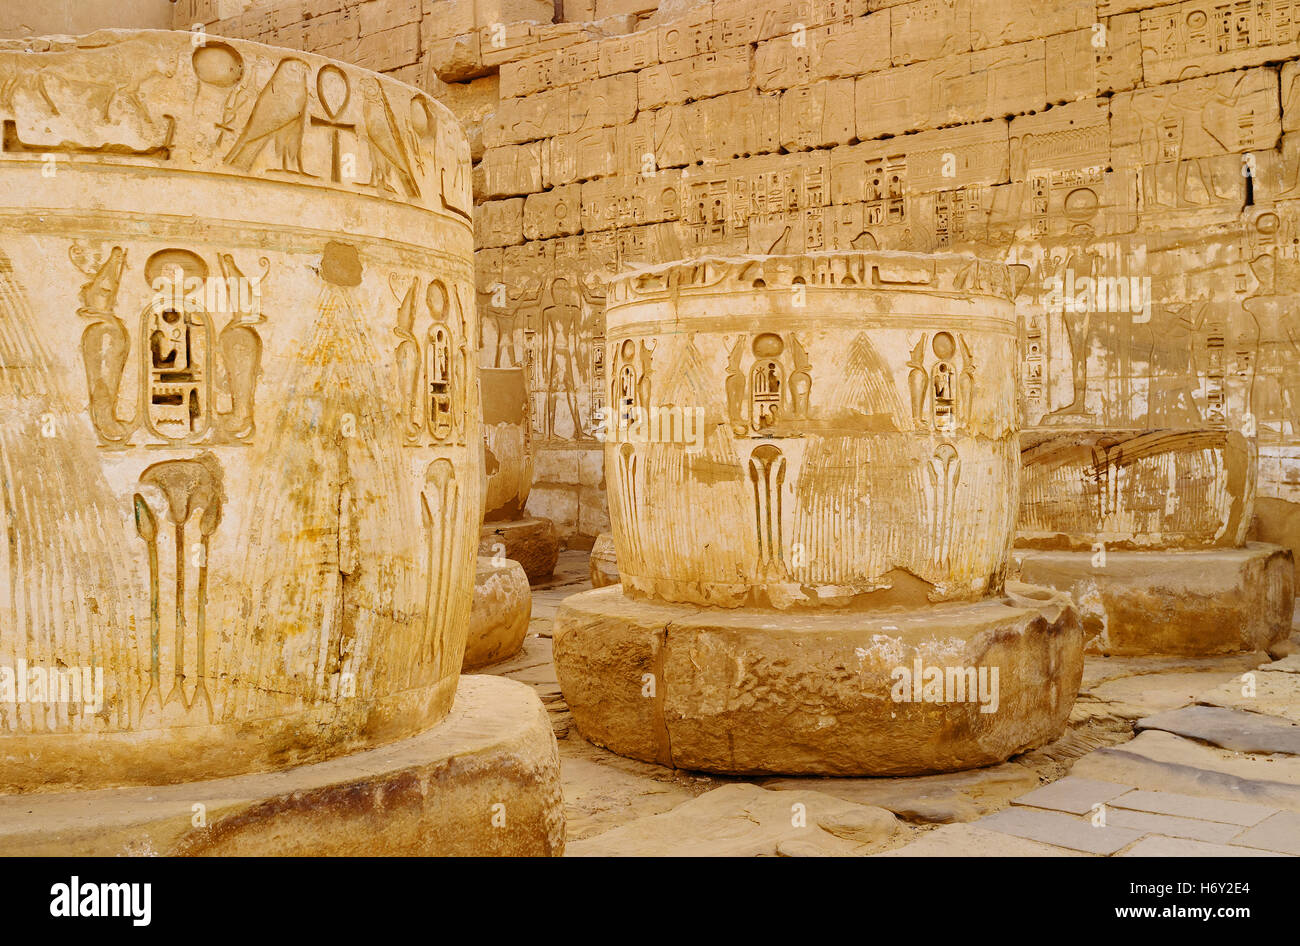 Il sacro cobras sono i simboli popolari nella cultura egizia antica, è scolpito su ogni colonna in Habu Tempio di Luxor. Foto Stock